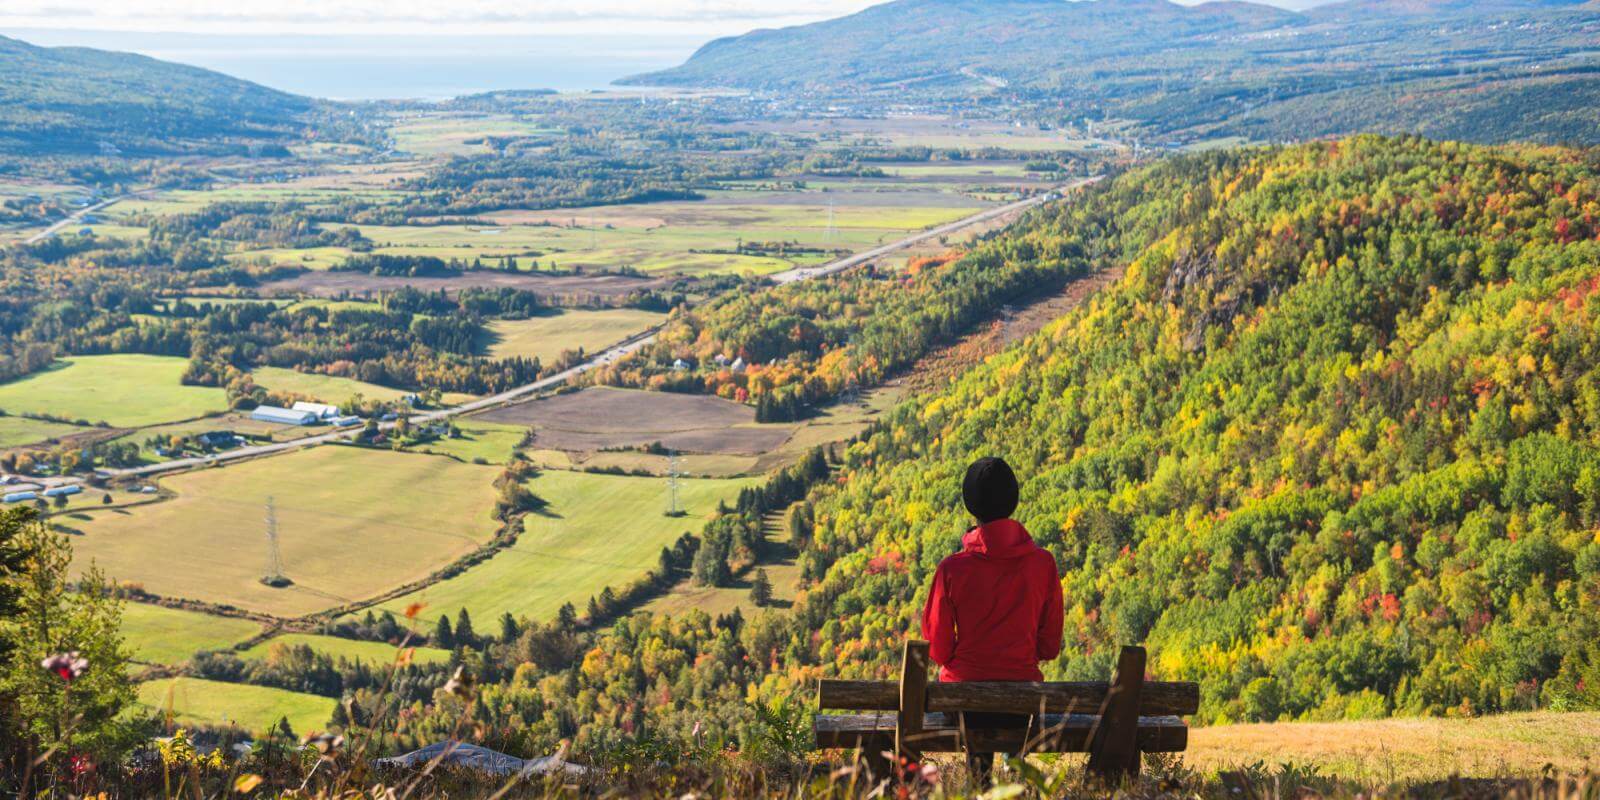 Une femme assise sur un banc au sommet d'une montagne observe le panorama et les couleurs d'automne dans la région de Charlevoix.